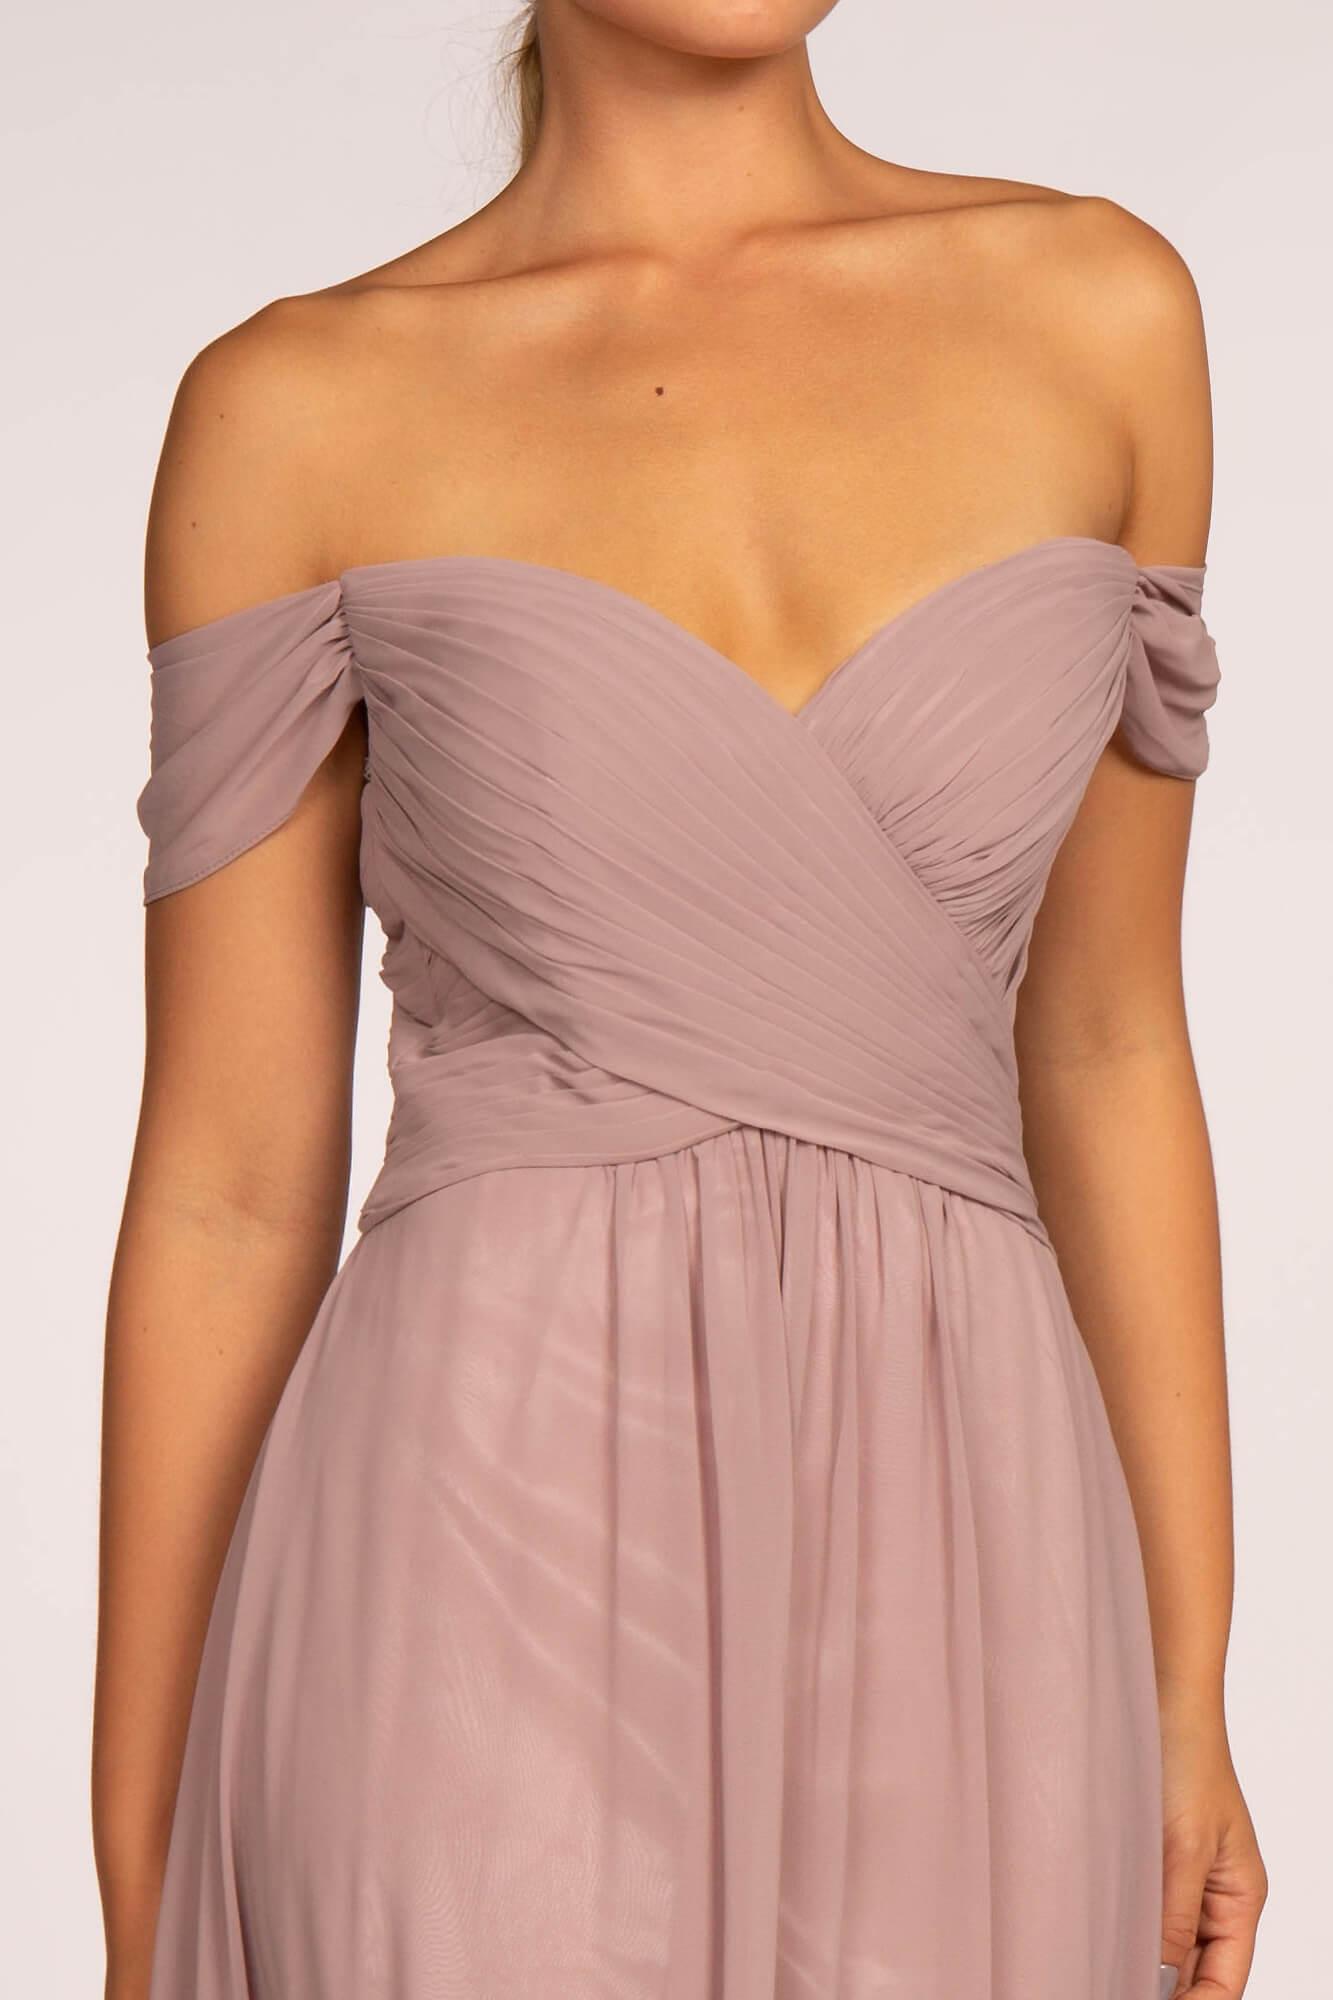 Off Shoulder Plus Size Long Formal Dress - The Dress Outlet Elizabeth K